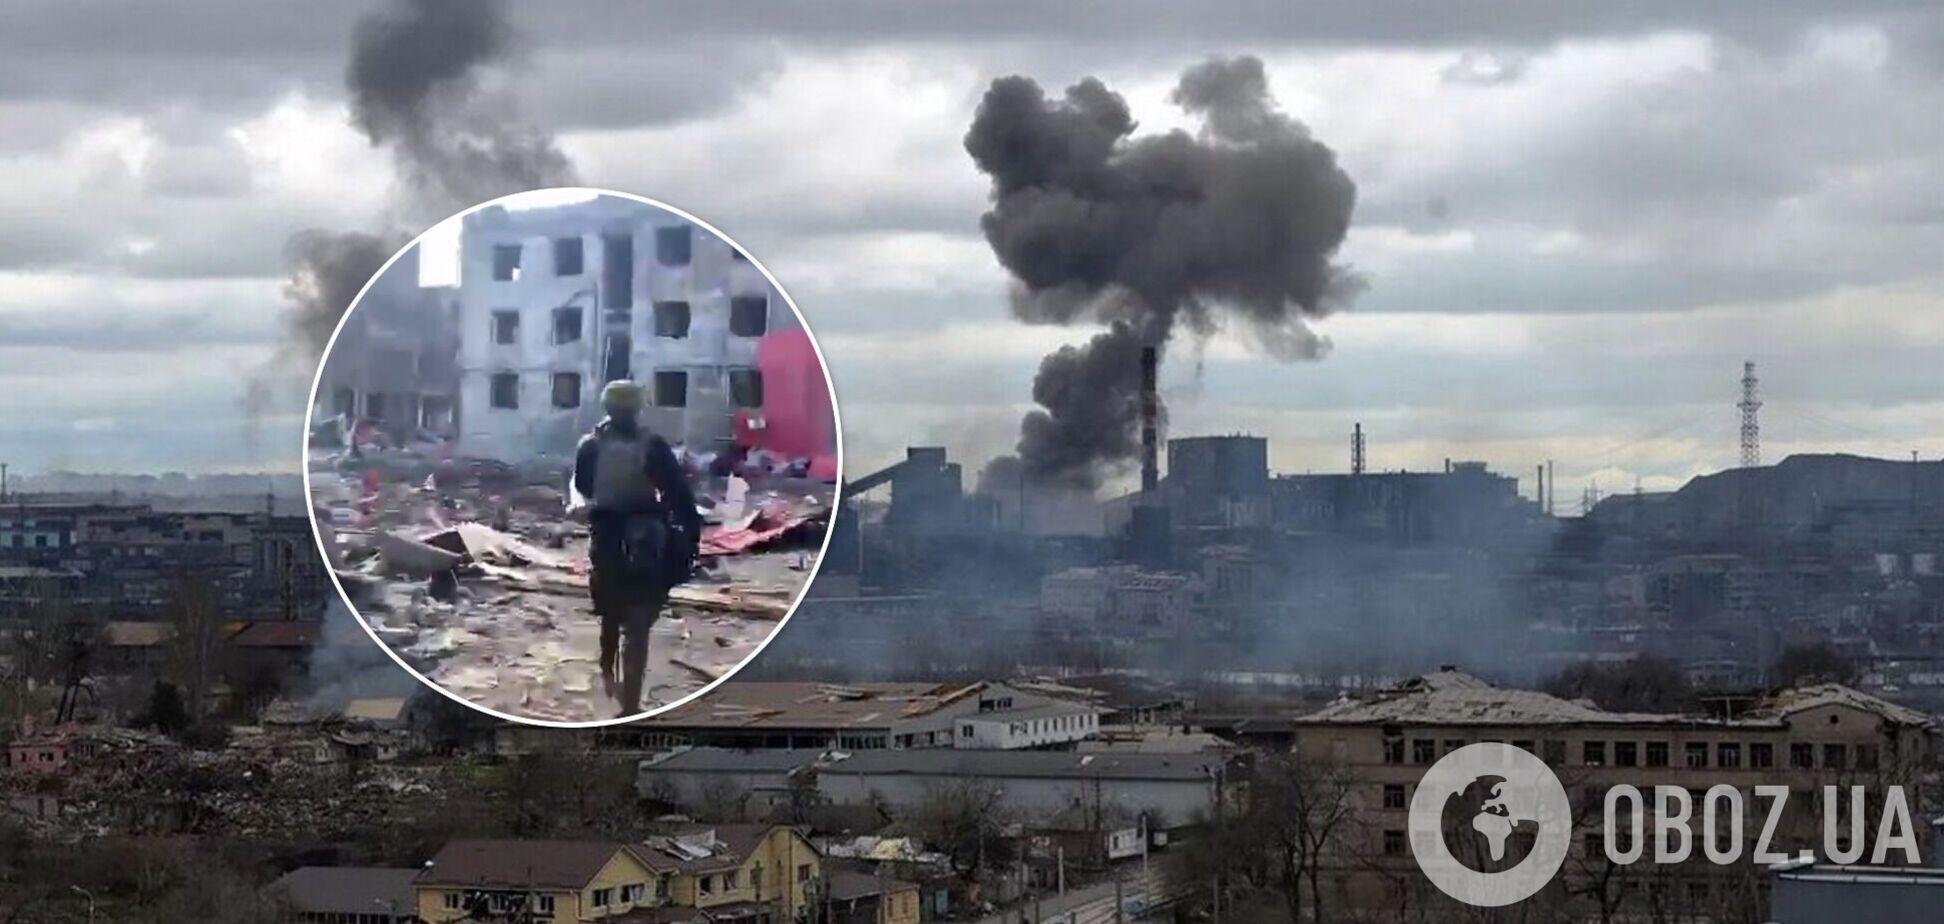 Украинские воины показали, как 'Азовсталь' выглядит после бомбардировок. Видео